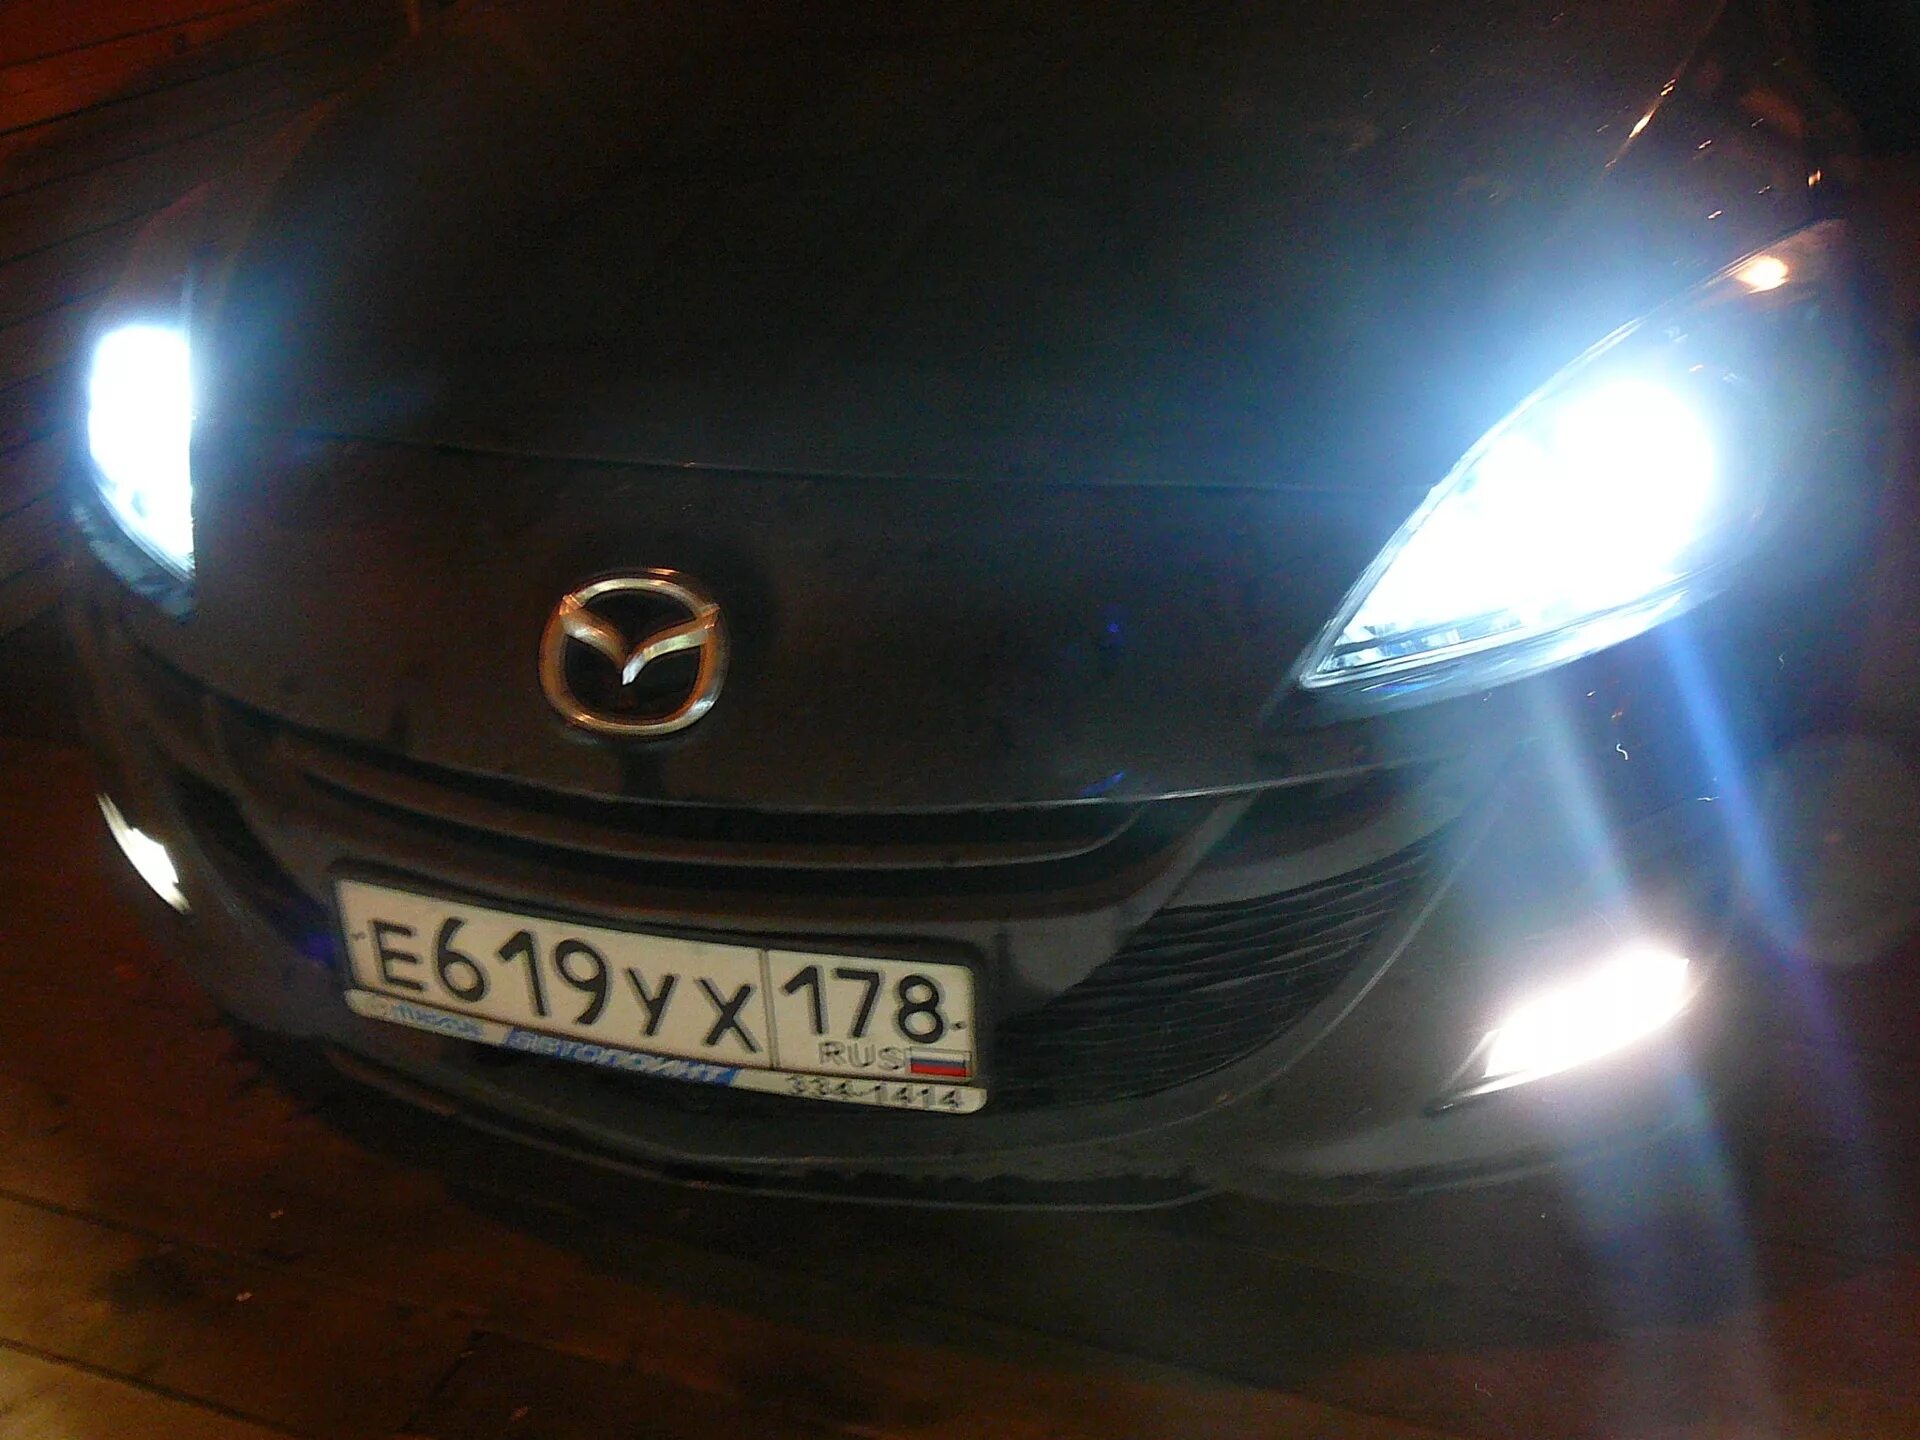 Mazda 3 BL С ксеноном. Ксенон в Ближний Мазда 3 BL. Мазда 3 бл 2010 лампы в туманках. Дополнительный свет Ближний Мазда 3 БК. Ксенон мазда 3